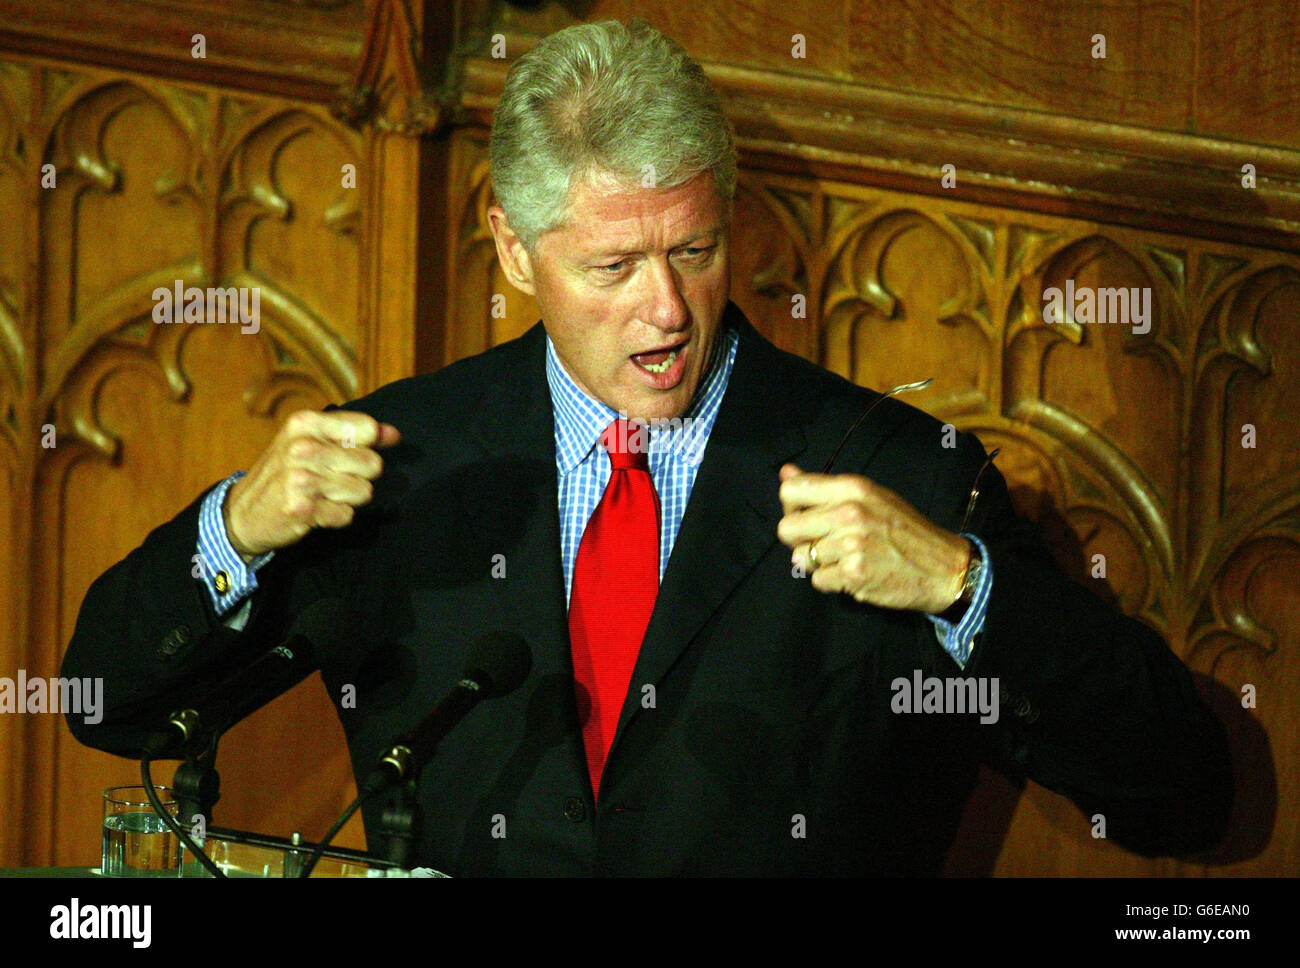 L'ex presidente degli Stati Uniti Bill Clinton, durante il suo discorso alla Guildhall nella città di Londra, dopo la cena della conferenza sulla governance progressista, questa sera. Foto Stock